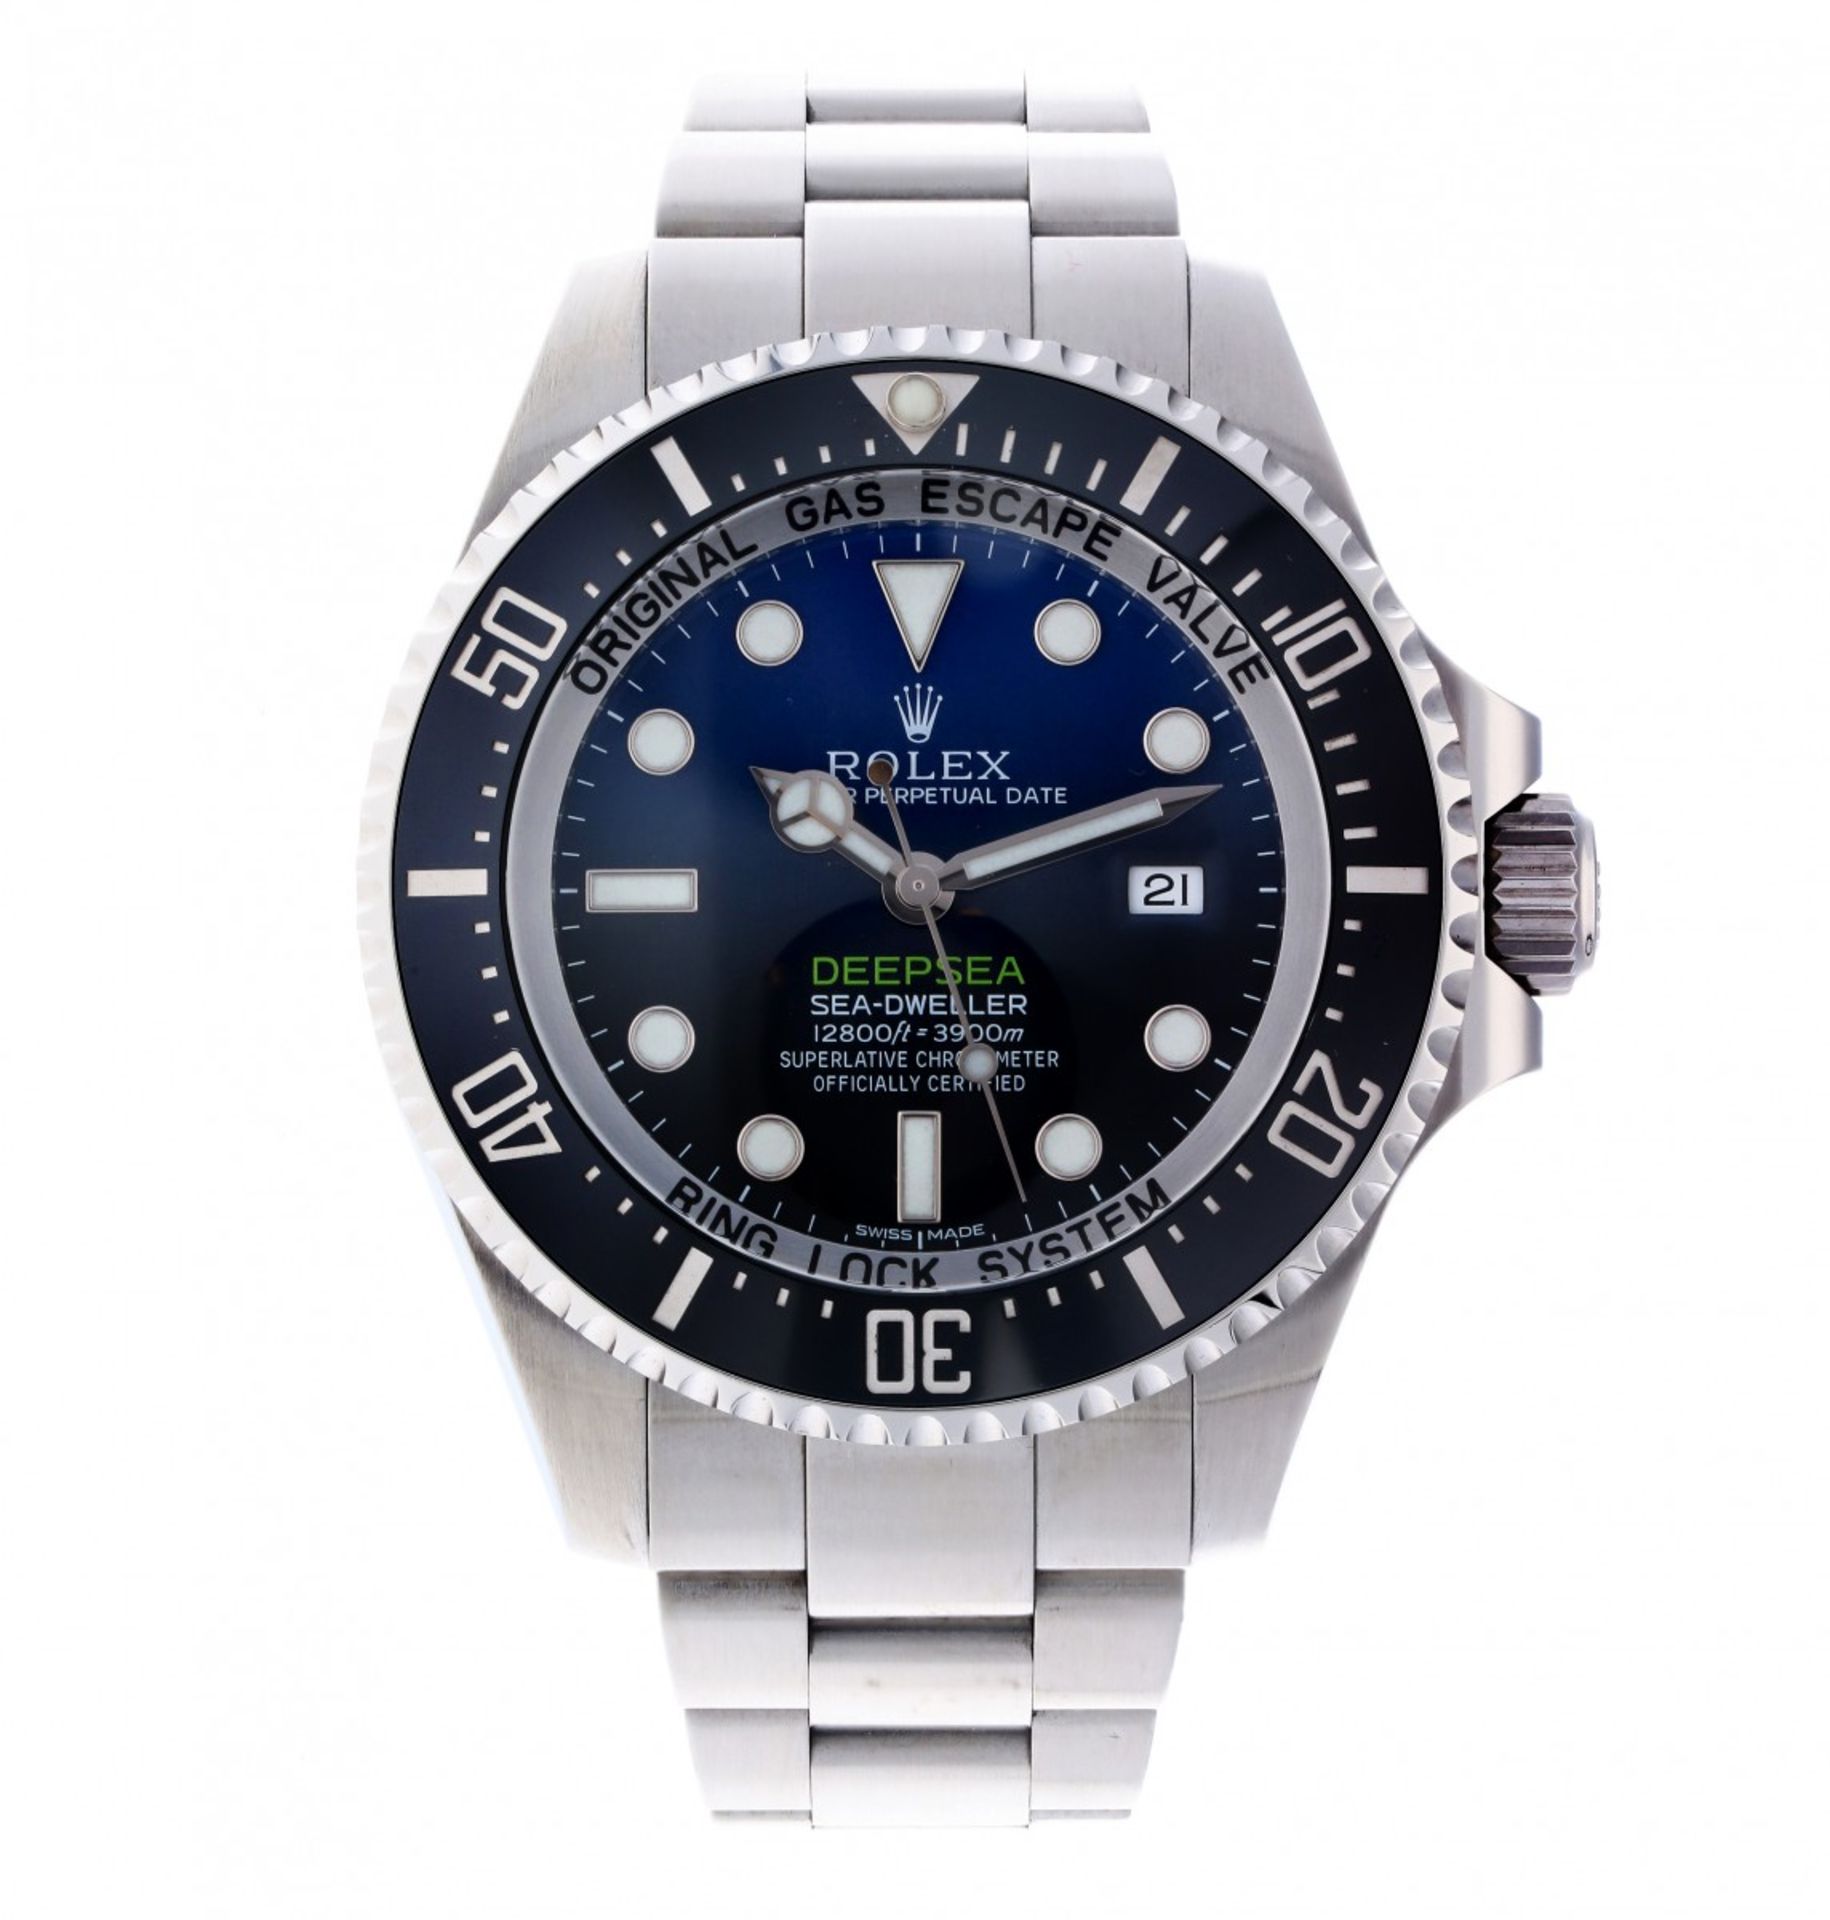 Rolex Sea Dweller Deepsea 116660 - Men's watch - approx. 2018